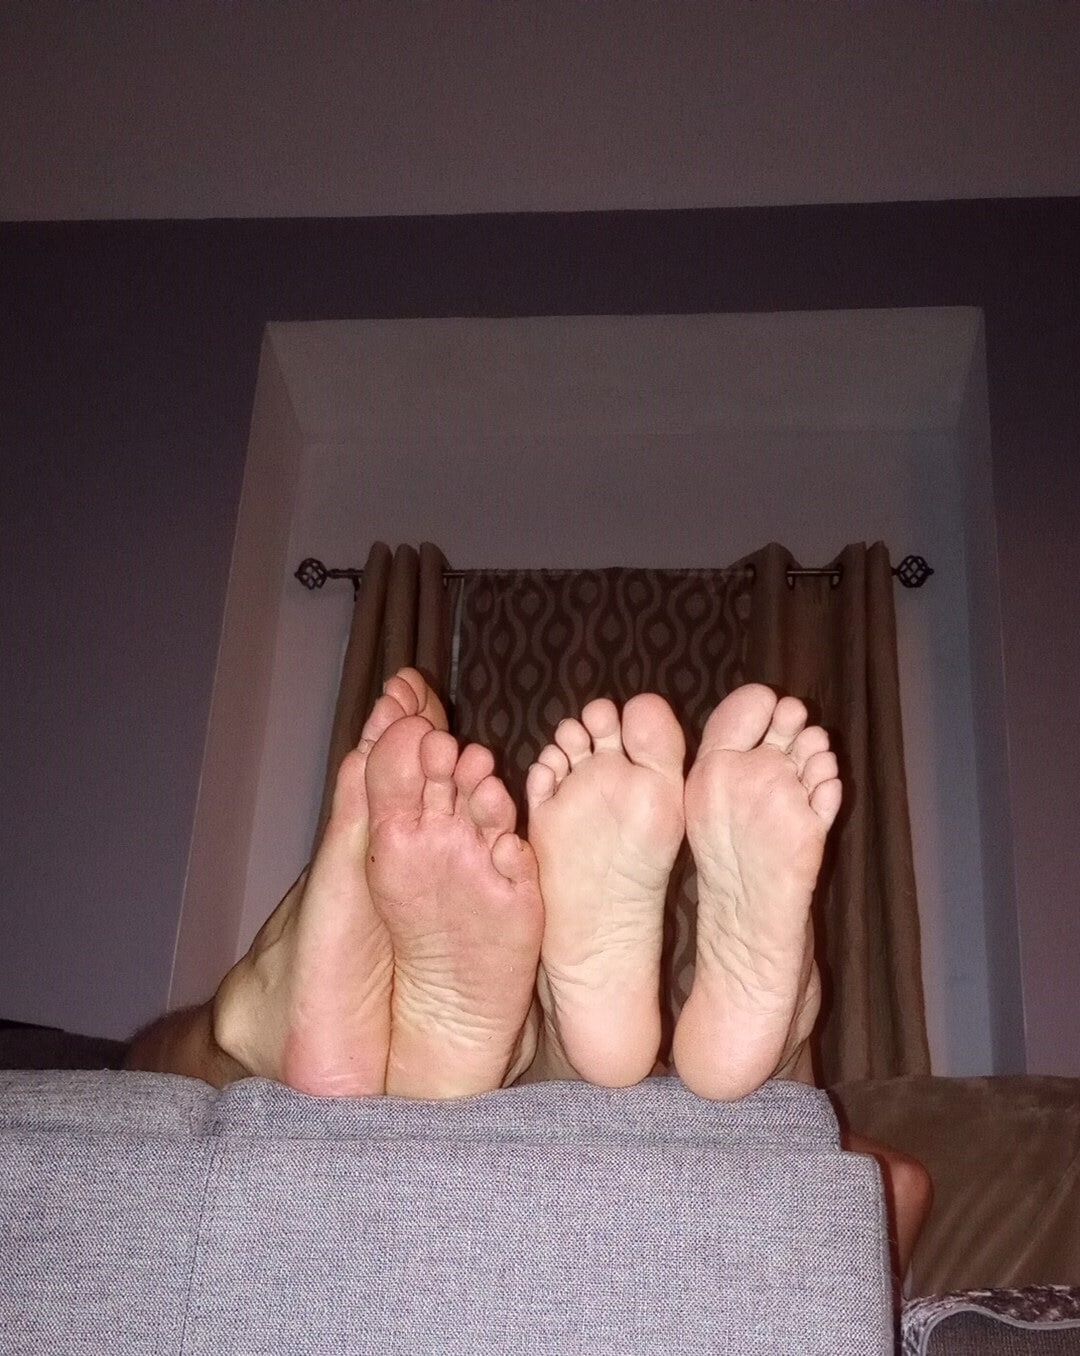 Do you like our feet together #10